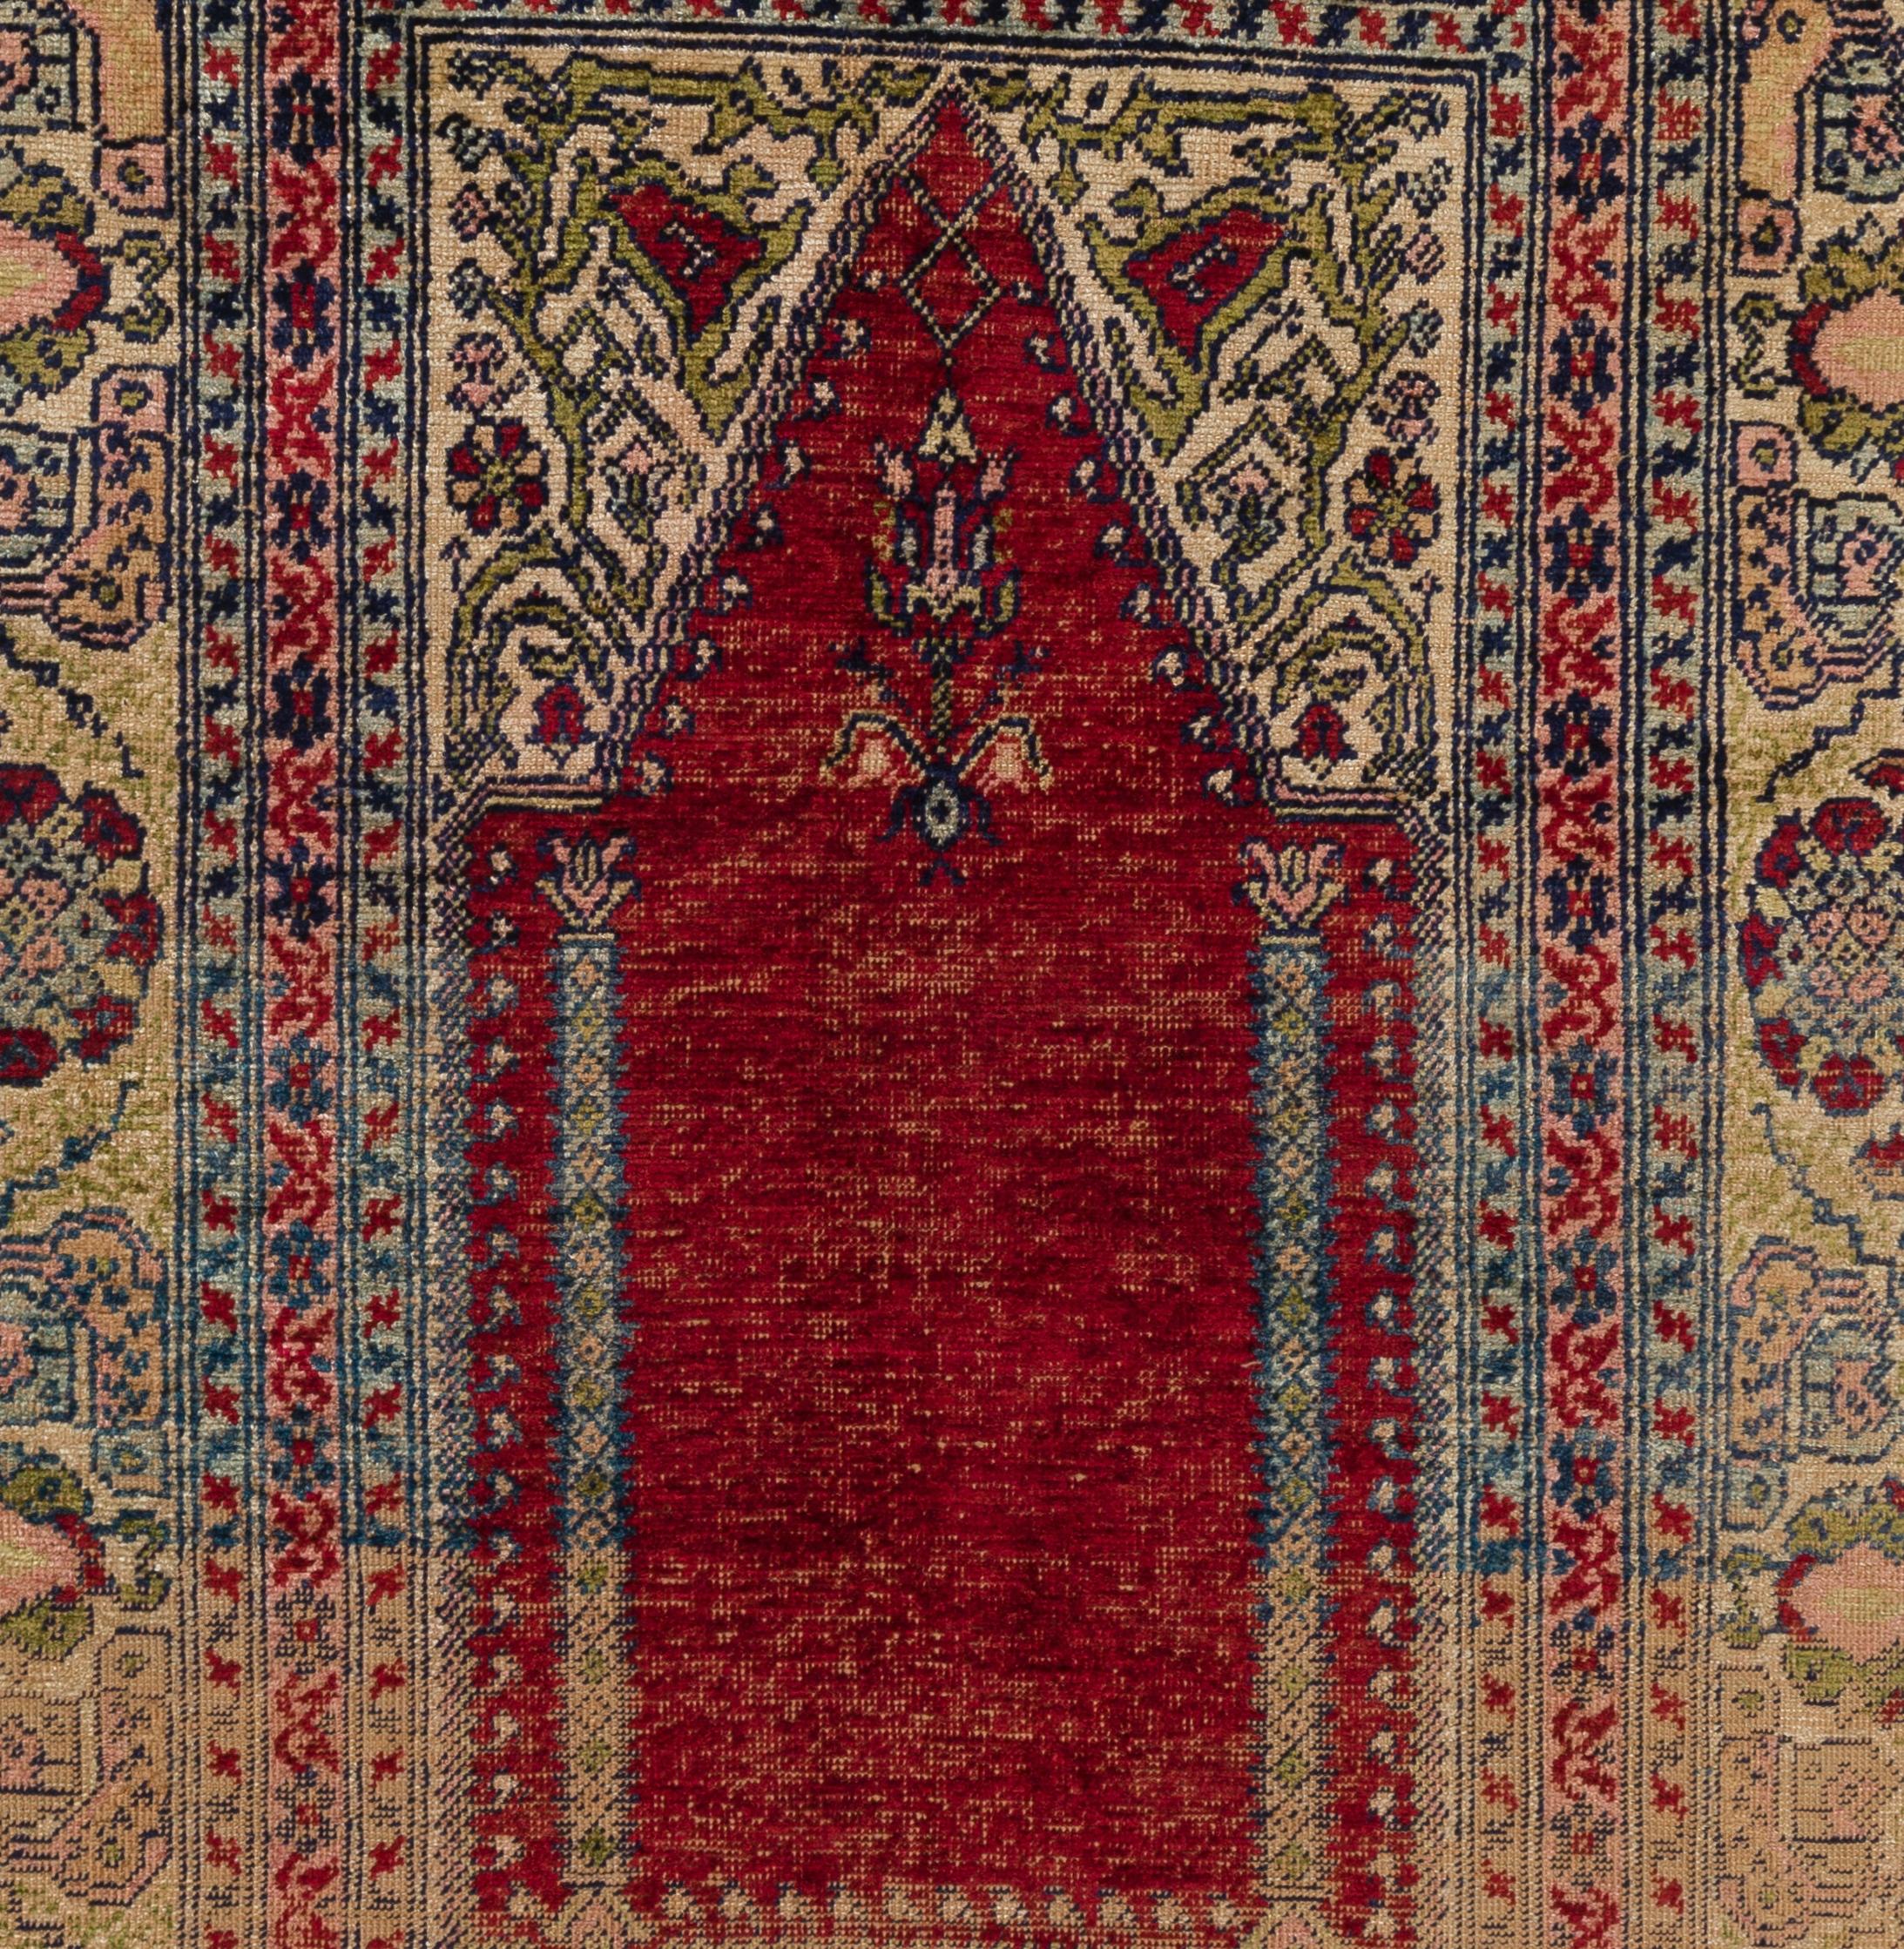 Ancien tapis en soie à motif de niche de la région de Kayseri, en Anatolie centrale, vers 1910. Très bon état. Robustes et aussi propres qu'un tapis neuf (lavés en profondeur par des professionnels).
Taille : 3.7 x 5.4 ft.